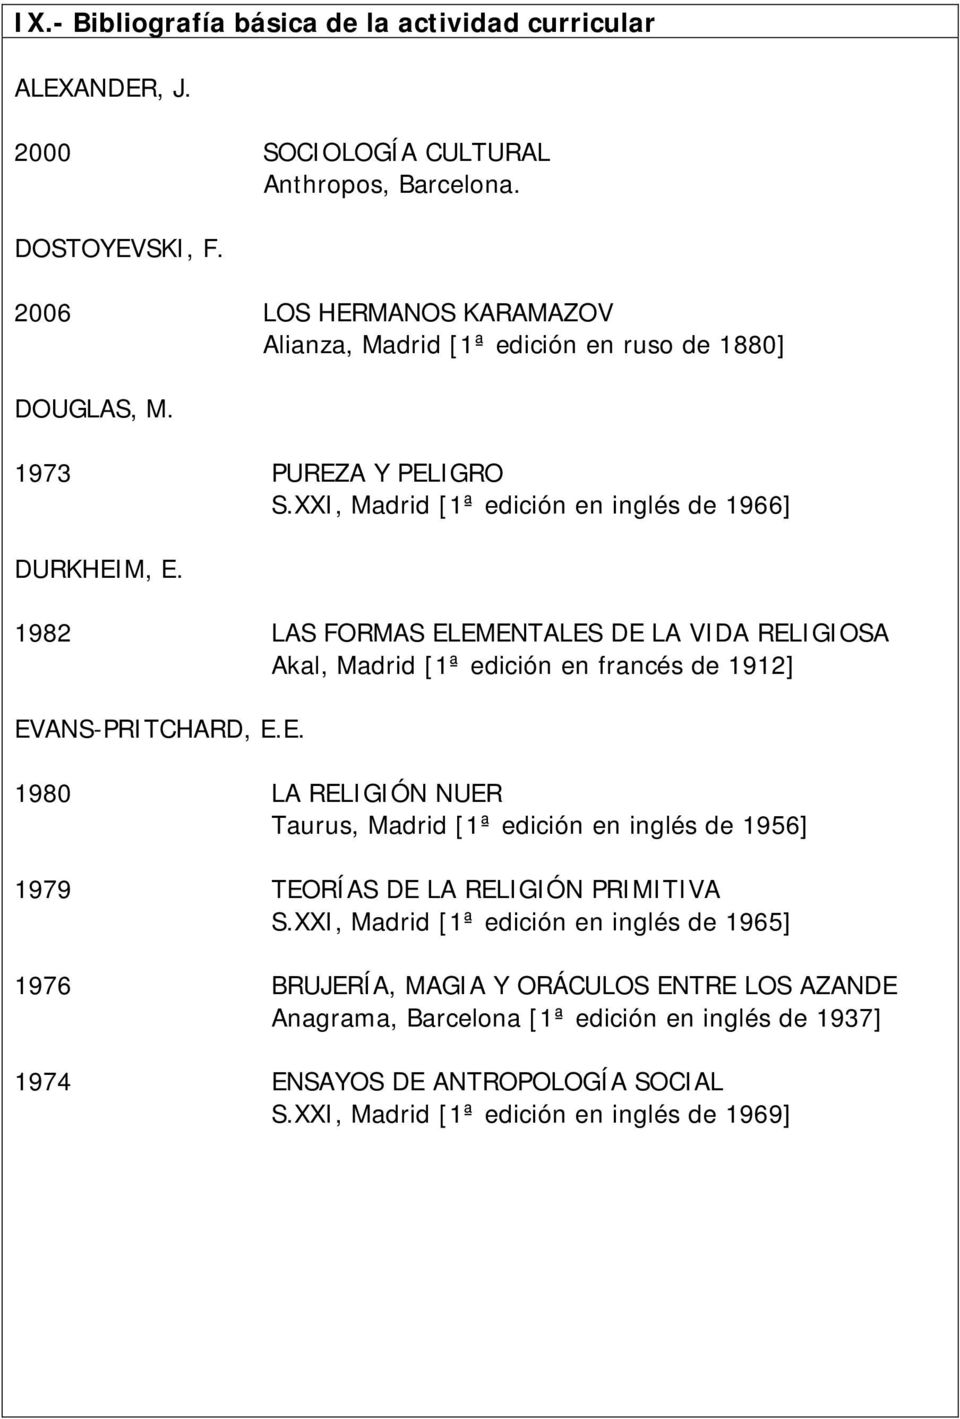 1982 LAS FORMAS ELEMENTALES DE LA VIDA RELIGIOSA Akal, Madrid [1ª edición en francés de 1912] EVANS-PRITCHARD, E.E. 1980 LA RELIGIÓN NUER Taurus, Madrid [1ª edición en inglés de 1956] 1979 TEORÍAS DE LA RELIGIÓN PRIMITIVA S.